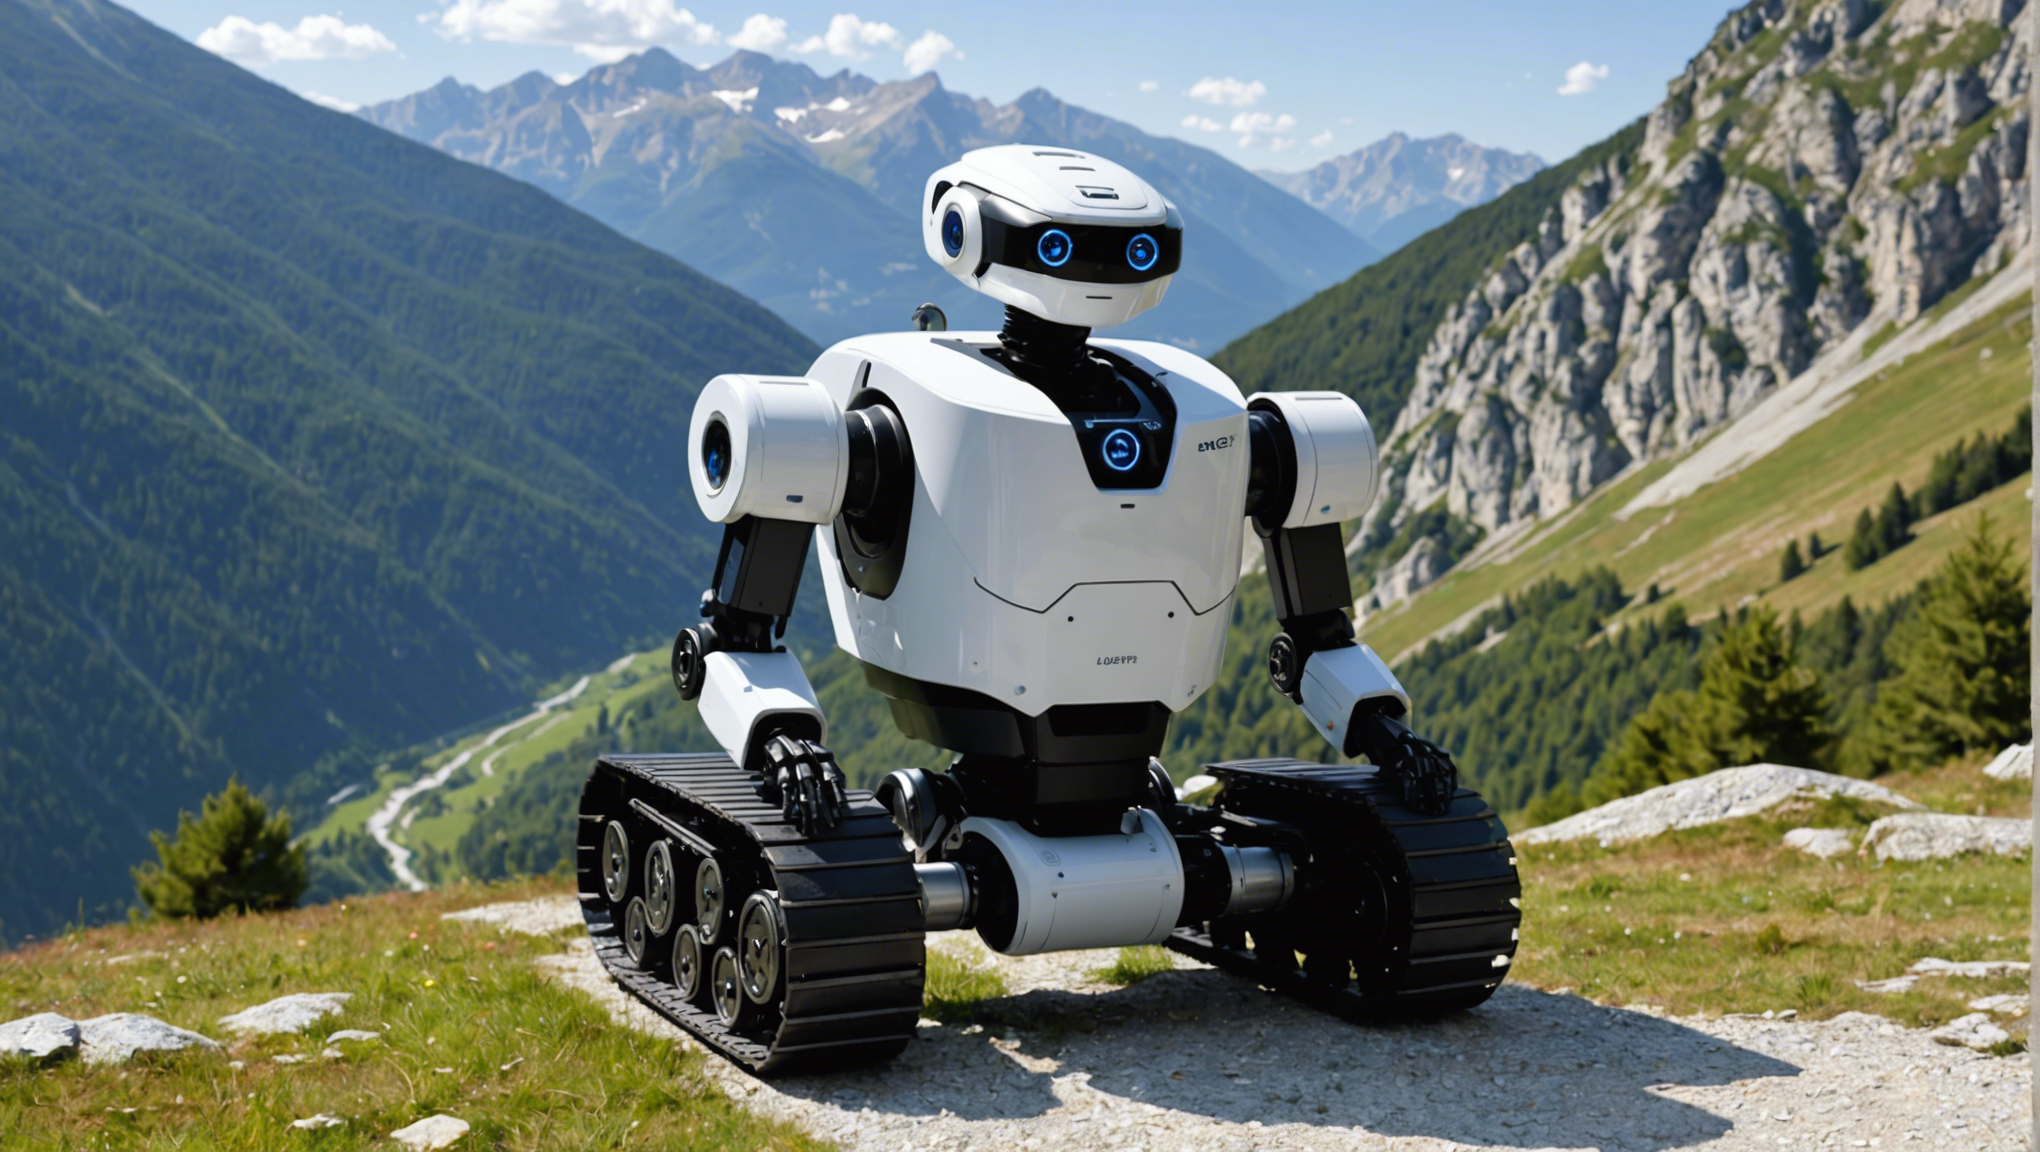 louez un robot dans les alpes de haute-provence pour des tâches automatisées et simplifiées. découvrez nos offres de location de robots pour diverses applications dans les alpes de haute-provence.